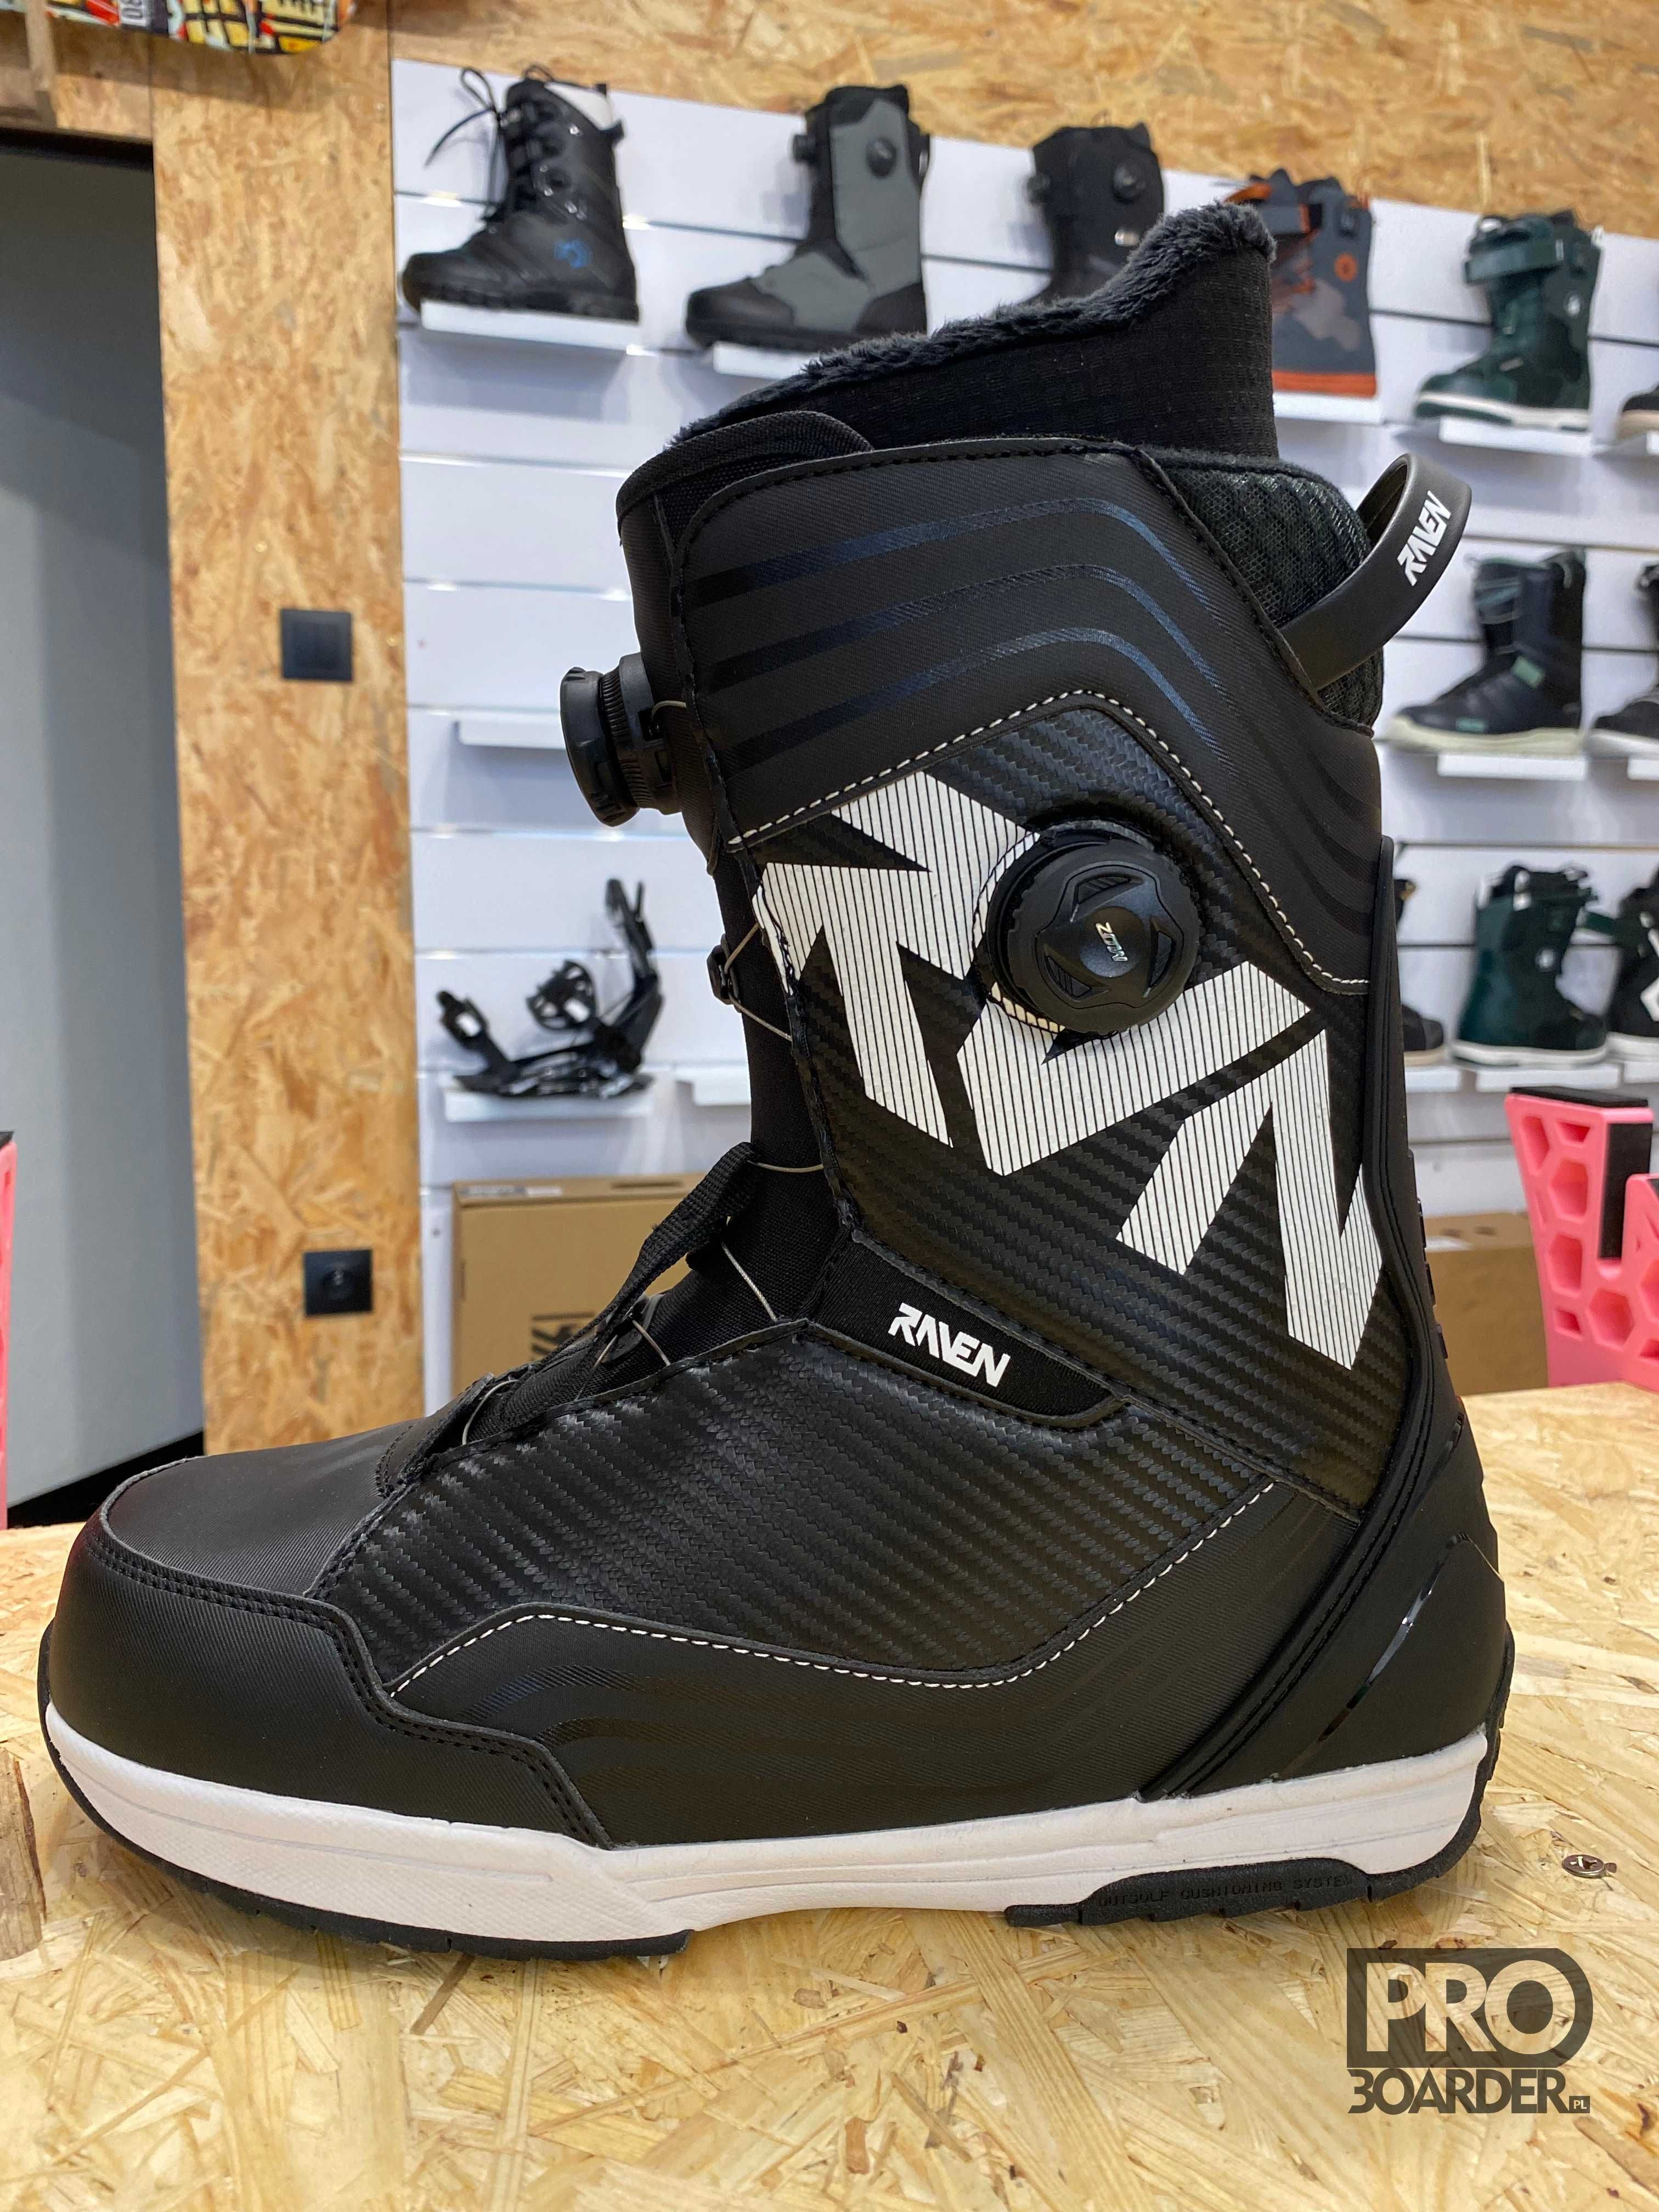 Nowe buty snowboardowe Raven PRO Dual MOZ (jak BOA), r. 42.5 (275mm)